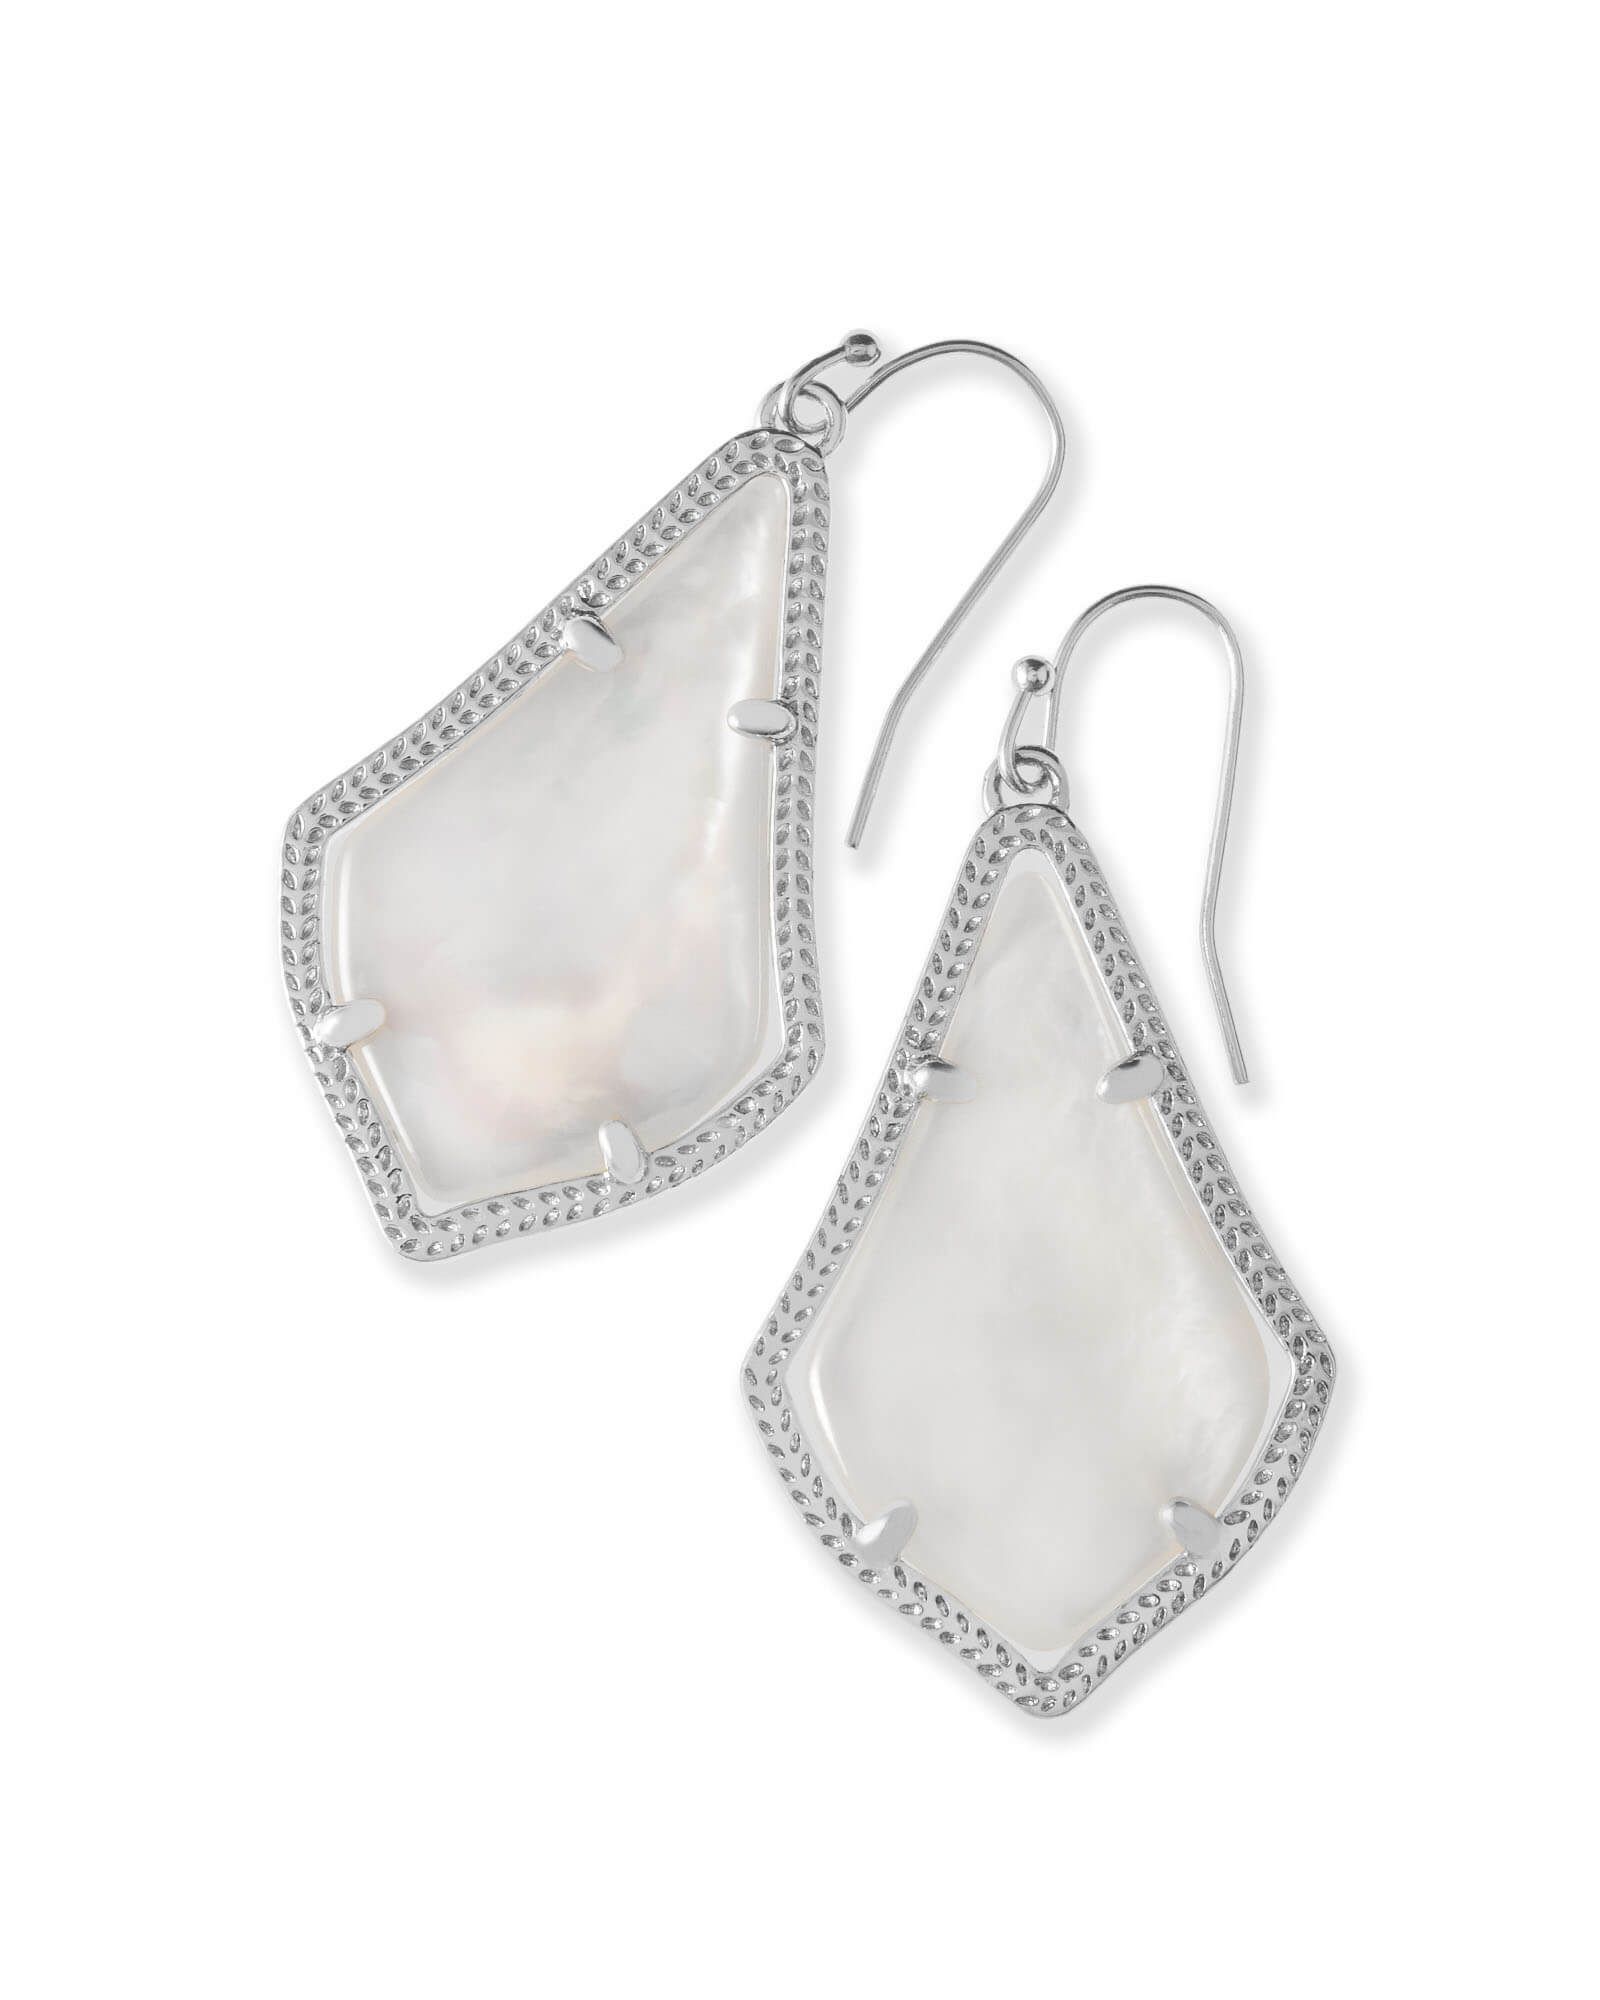 Alex Silver Drop Earrings in Ivory Pearl | Kendra Scott